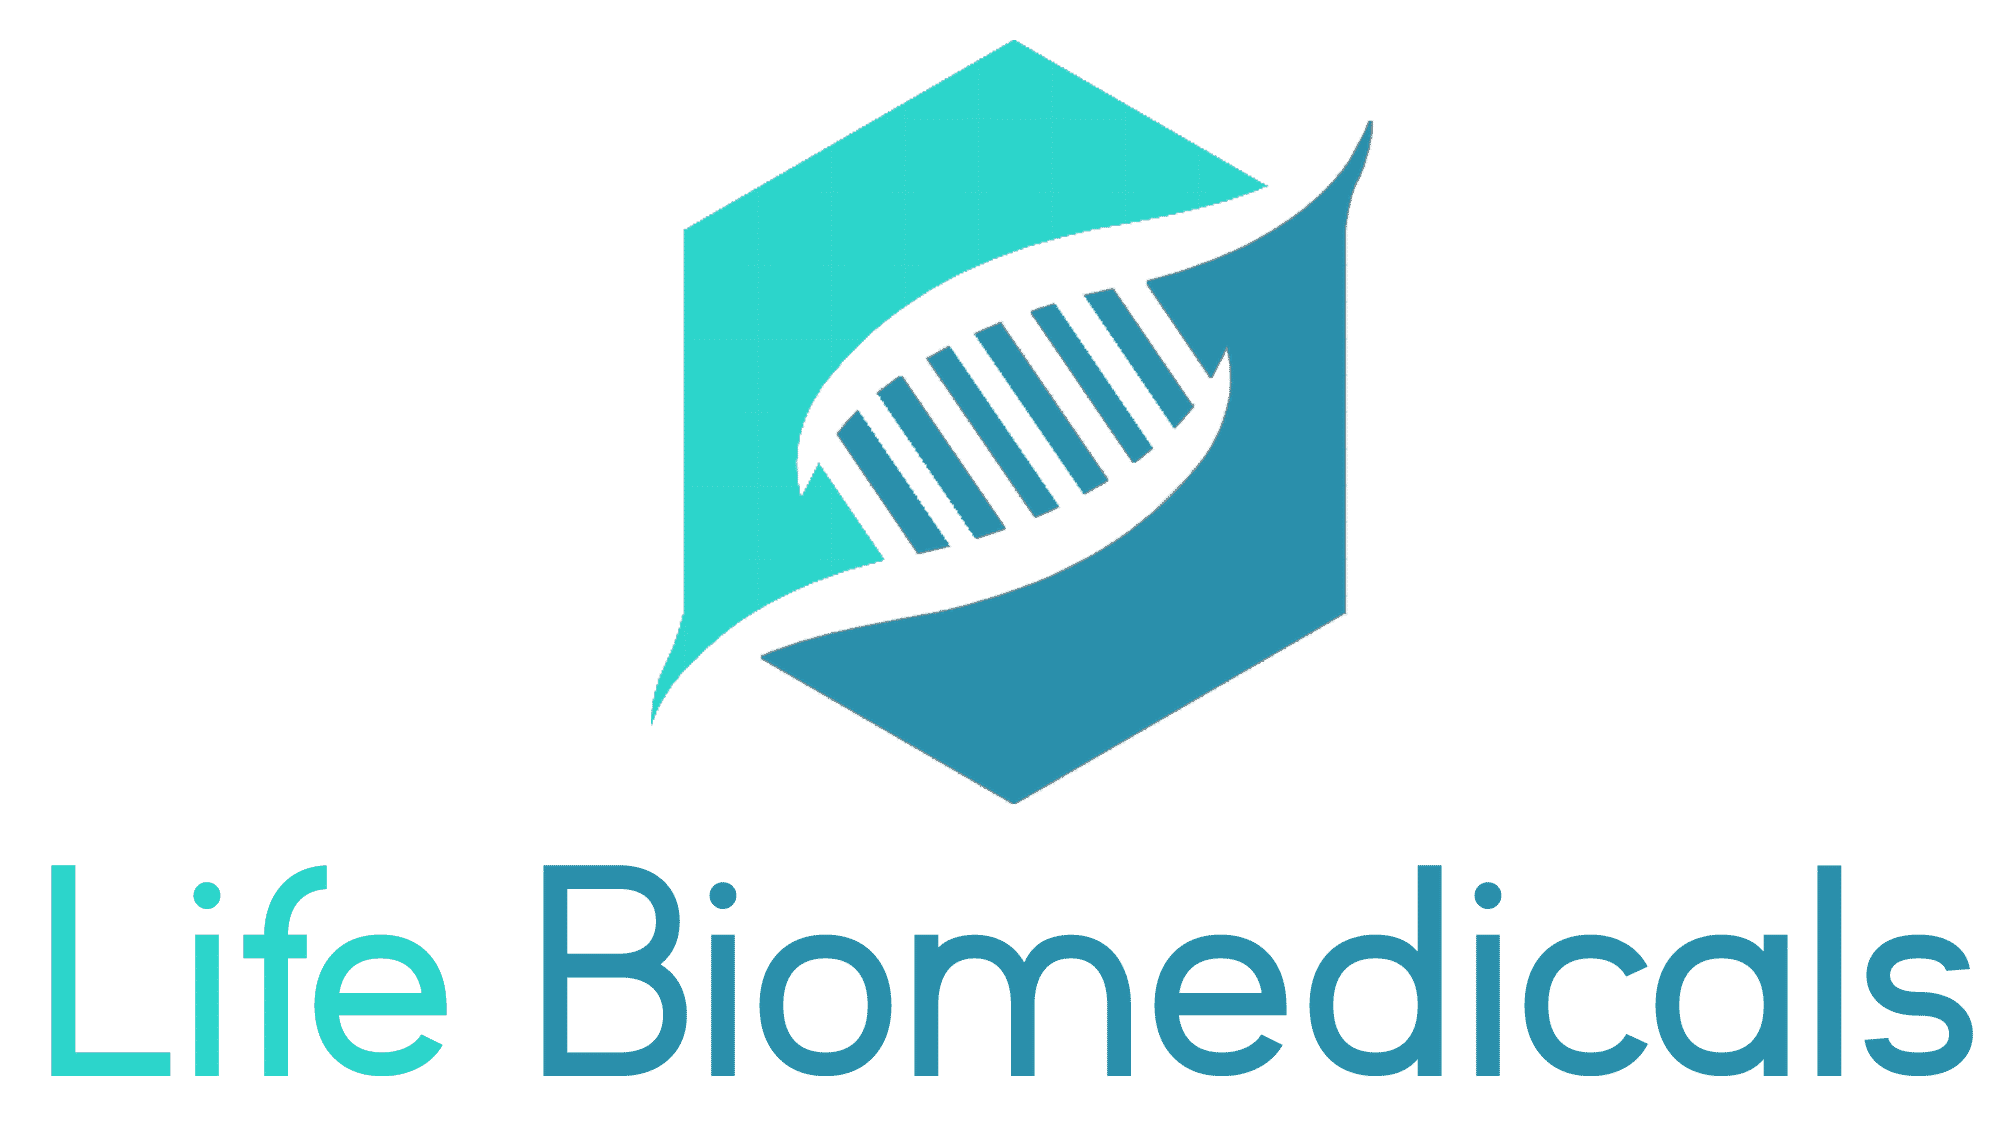 Life Biomedicals